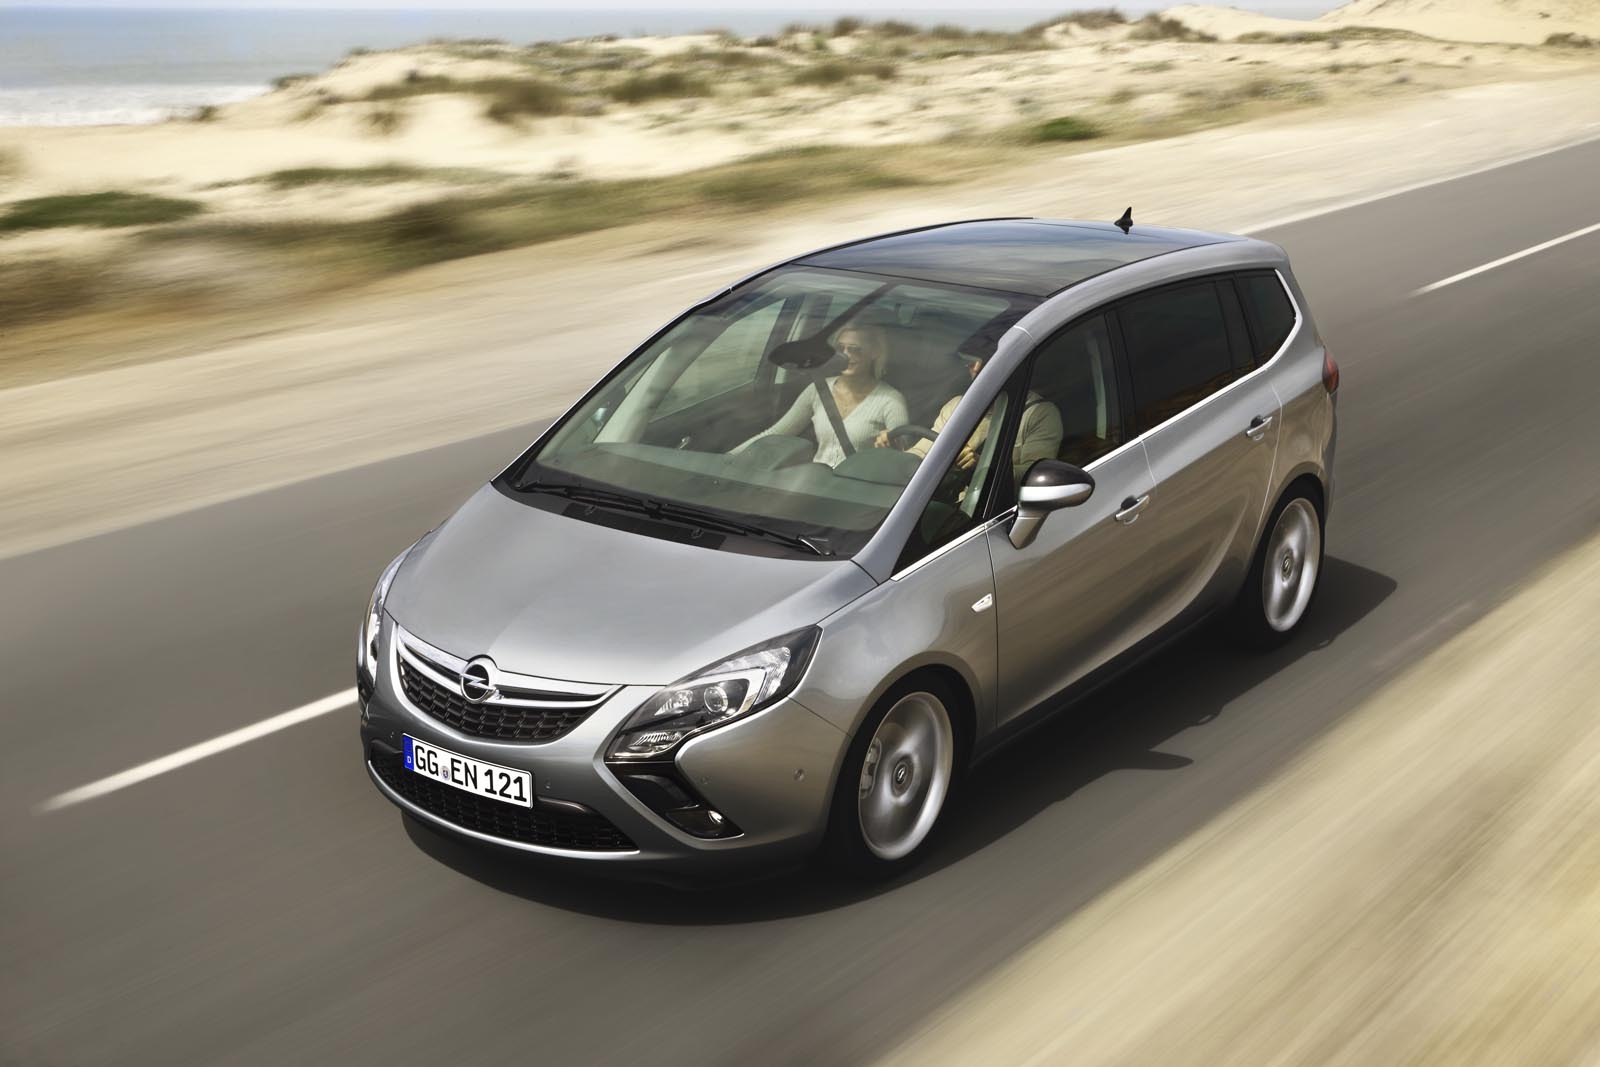 Suspensia lui Opel Zafira Tourer asigura atat confort, cat si stabilitate